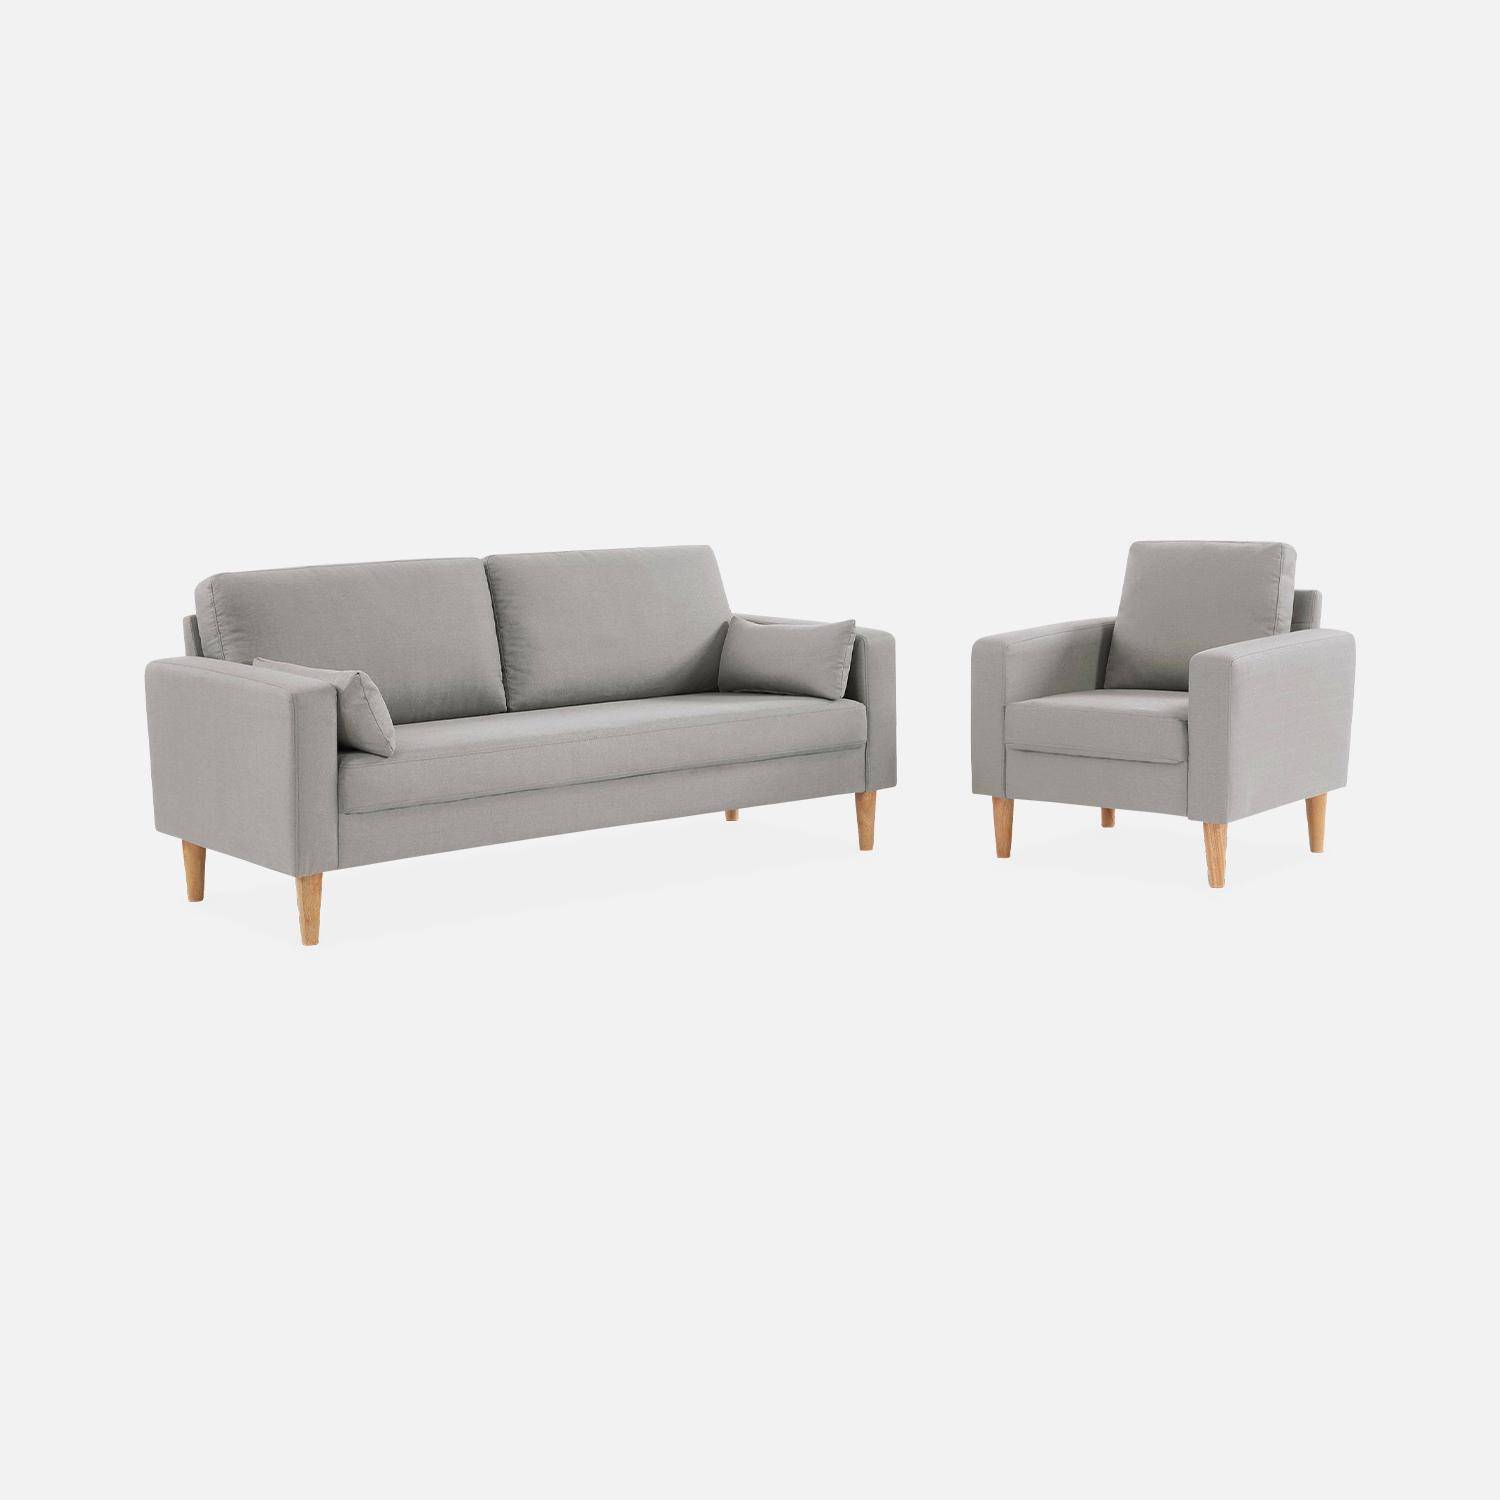 Lichtgrijs stoffen armstoel - Bjorn - 1-zits sofa met houten poten, Scandinavische stijl Photo5